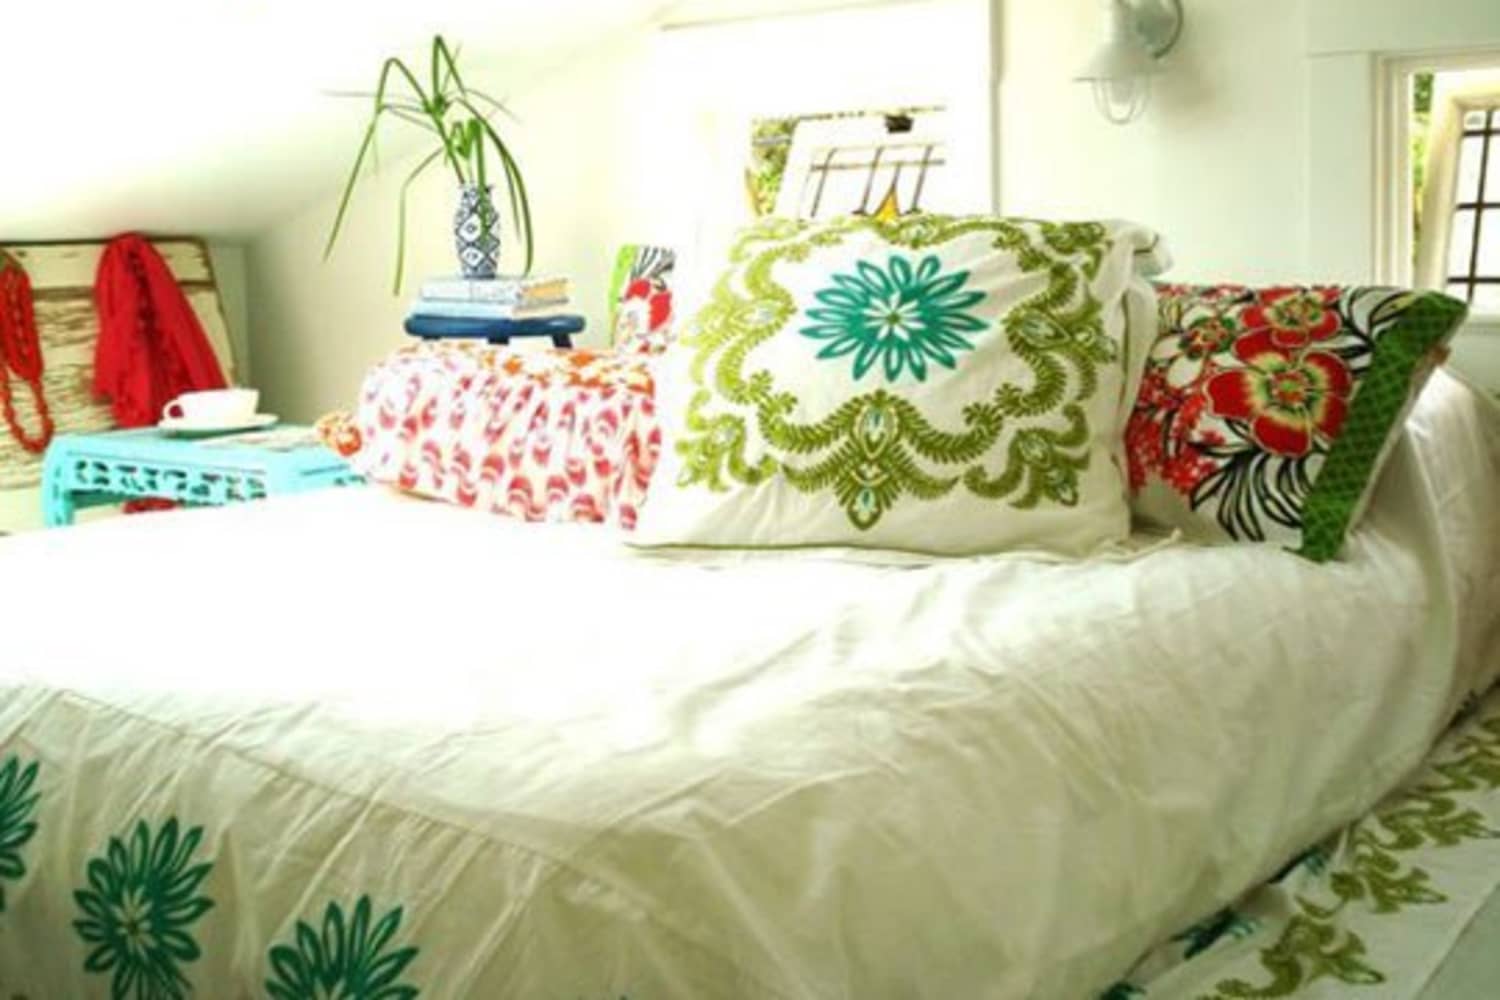 Tipy + triky: Ako rozpoznať čisté matrace a posteľnú bielizeň